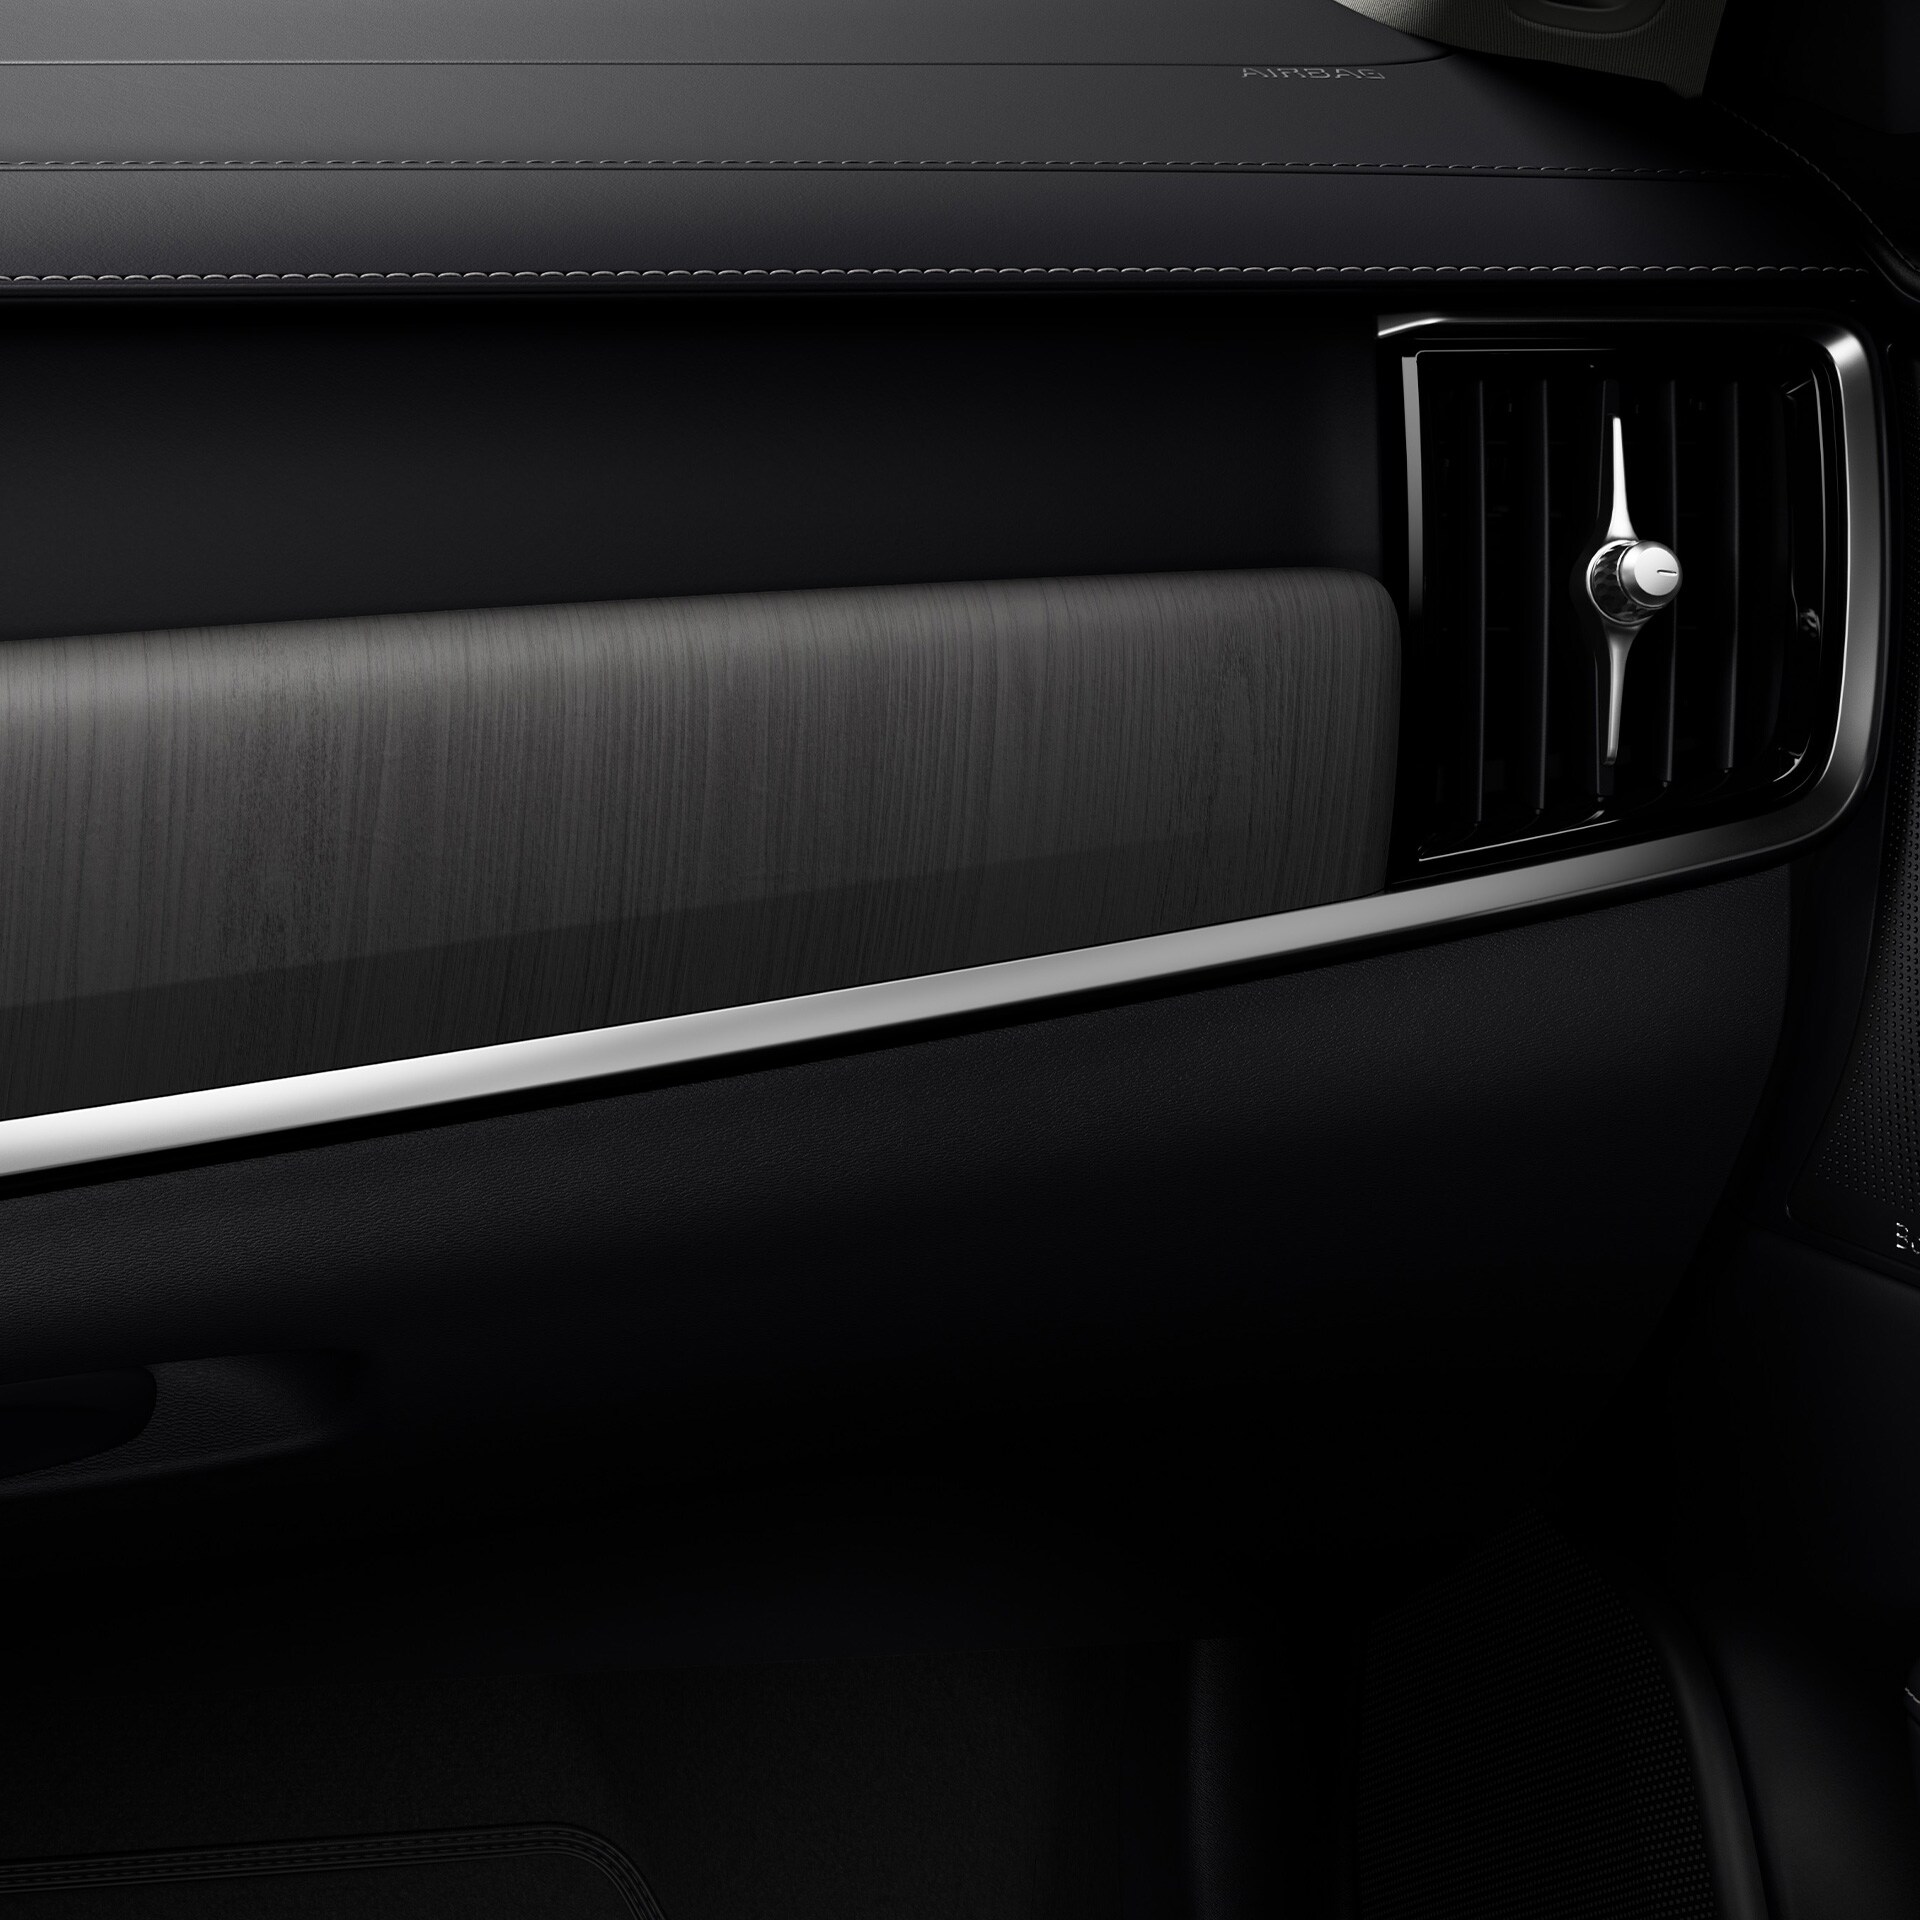 Le purificateur d'air sophistiqué de la Volvo V90 permet aux occupants de la voiture de respirer un air plus sain.